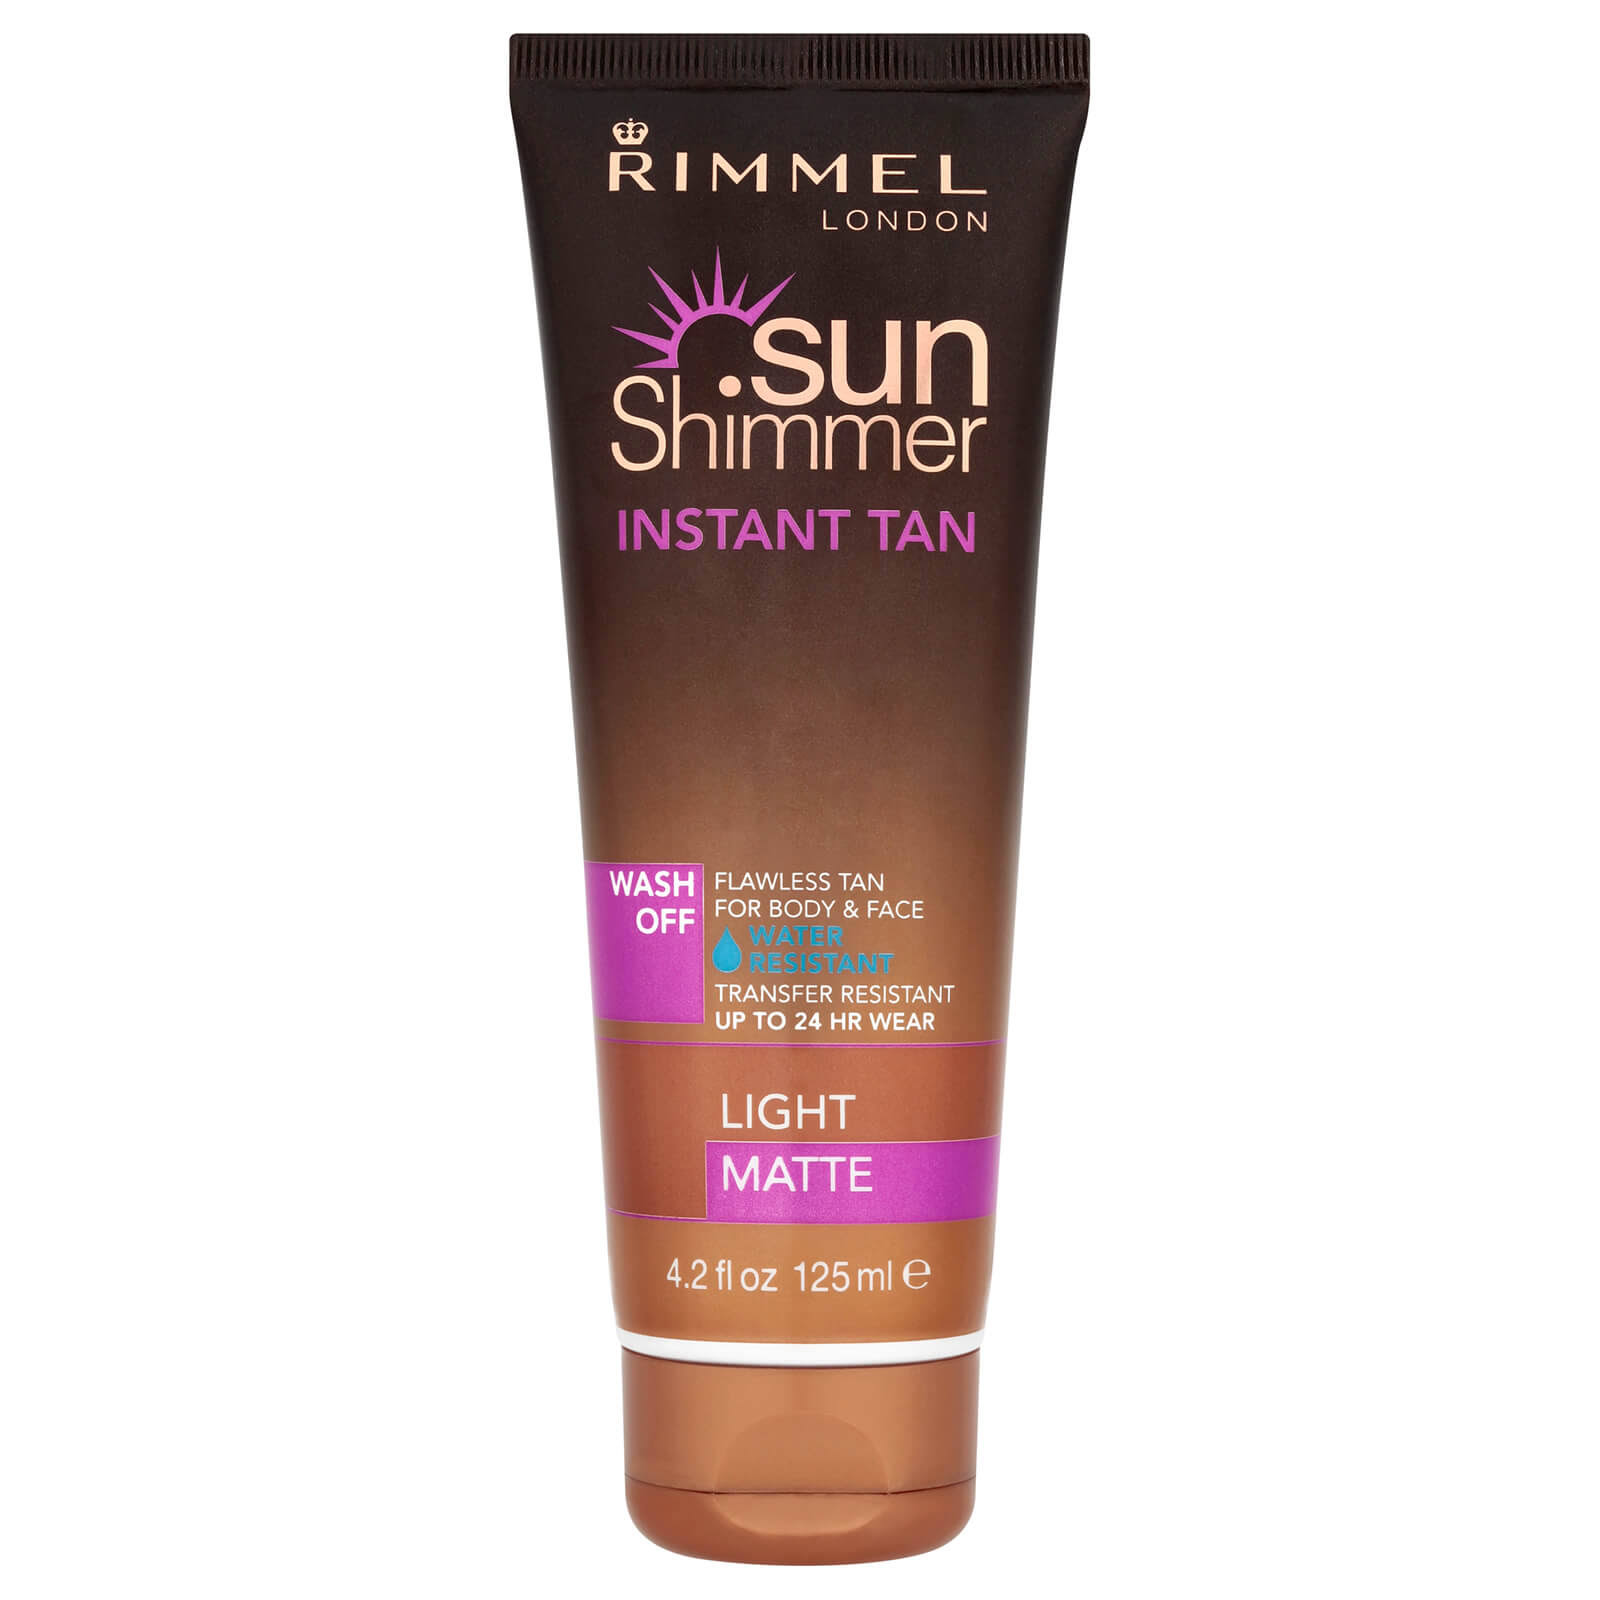 Rimmel London Sunshimmer Instant Tan Cream - Light Matte, 125ml